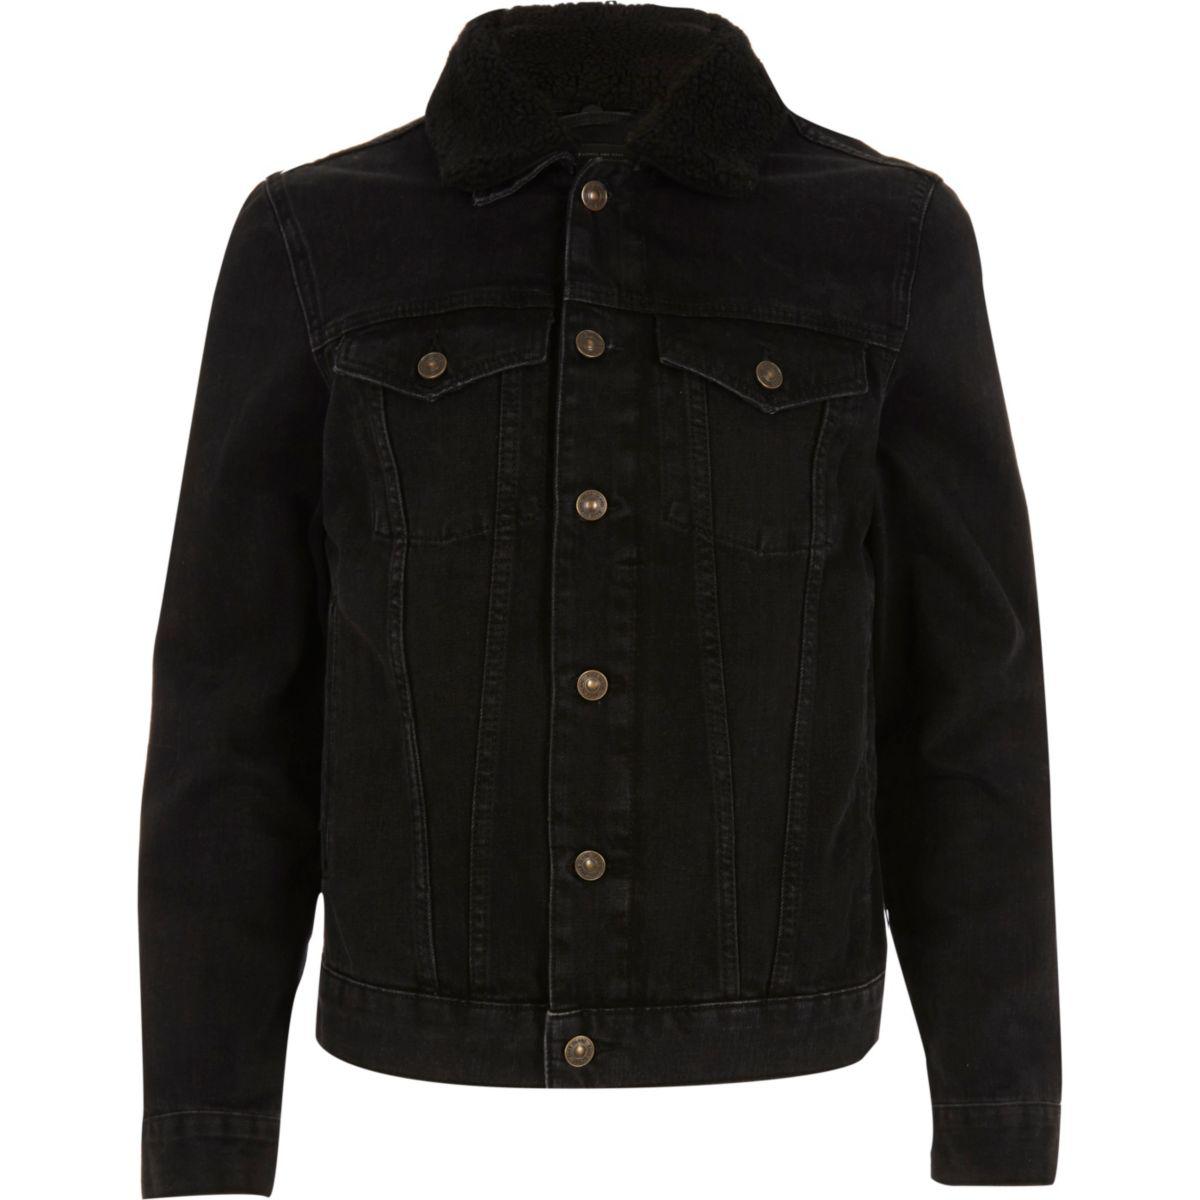 River Island Black Washed Borg Collar Denim Jacket for Men - Lyst